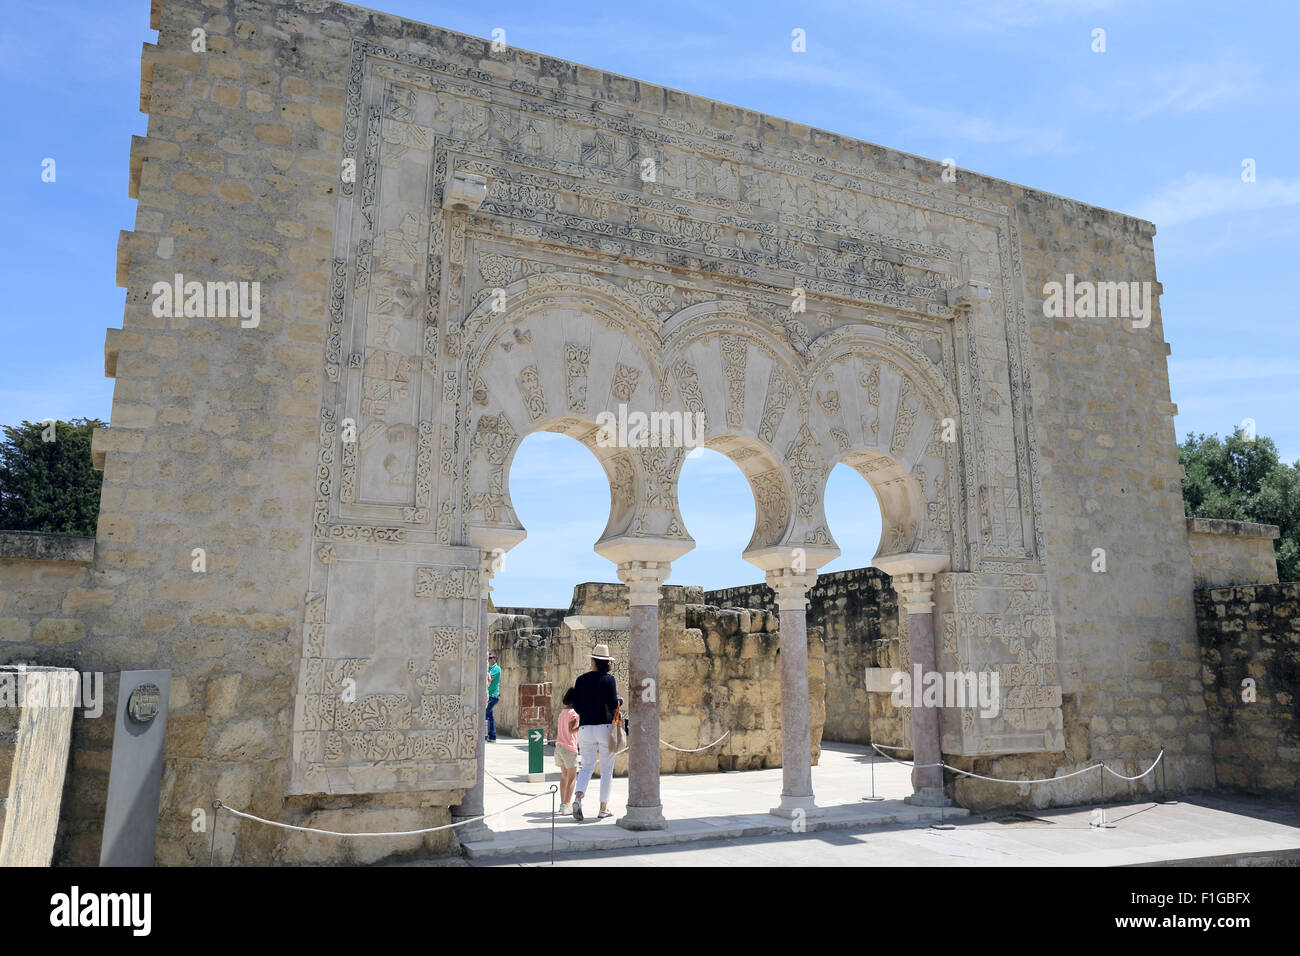 The arched entrance to the House of Ya'far, Medina Azahara, (Madinat az-Zahra Arab Muslin medieval palace-city), Cordoba, Spain. Stock Photo